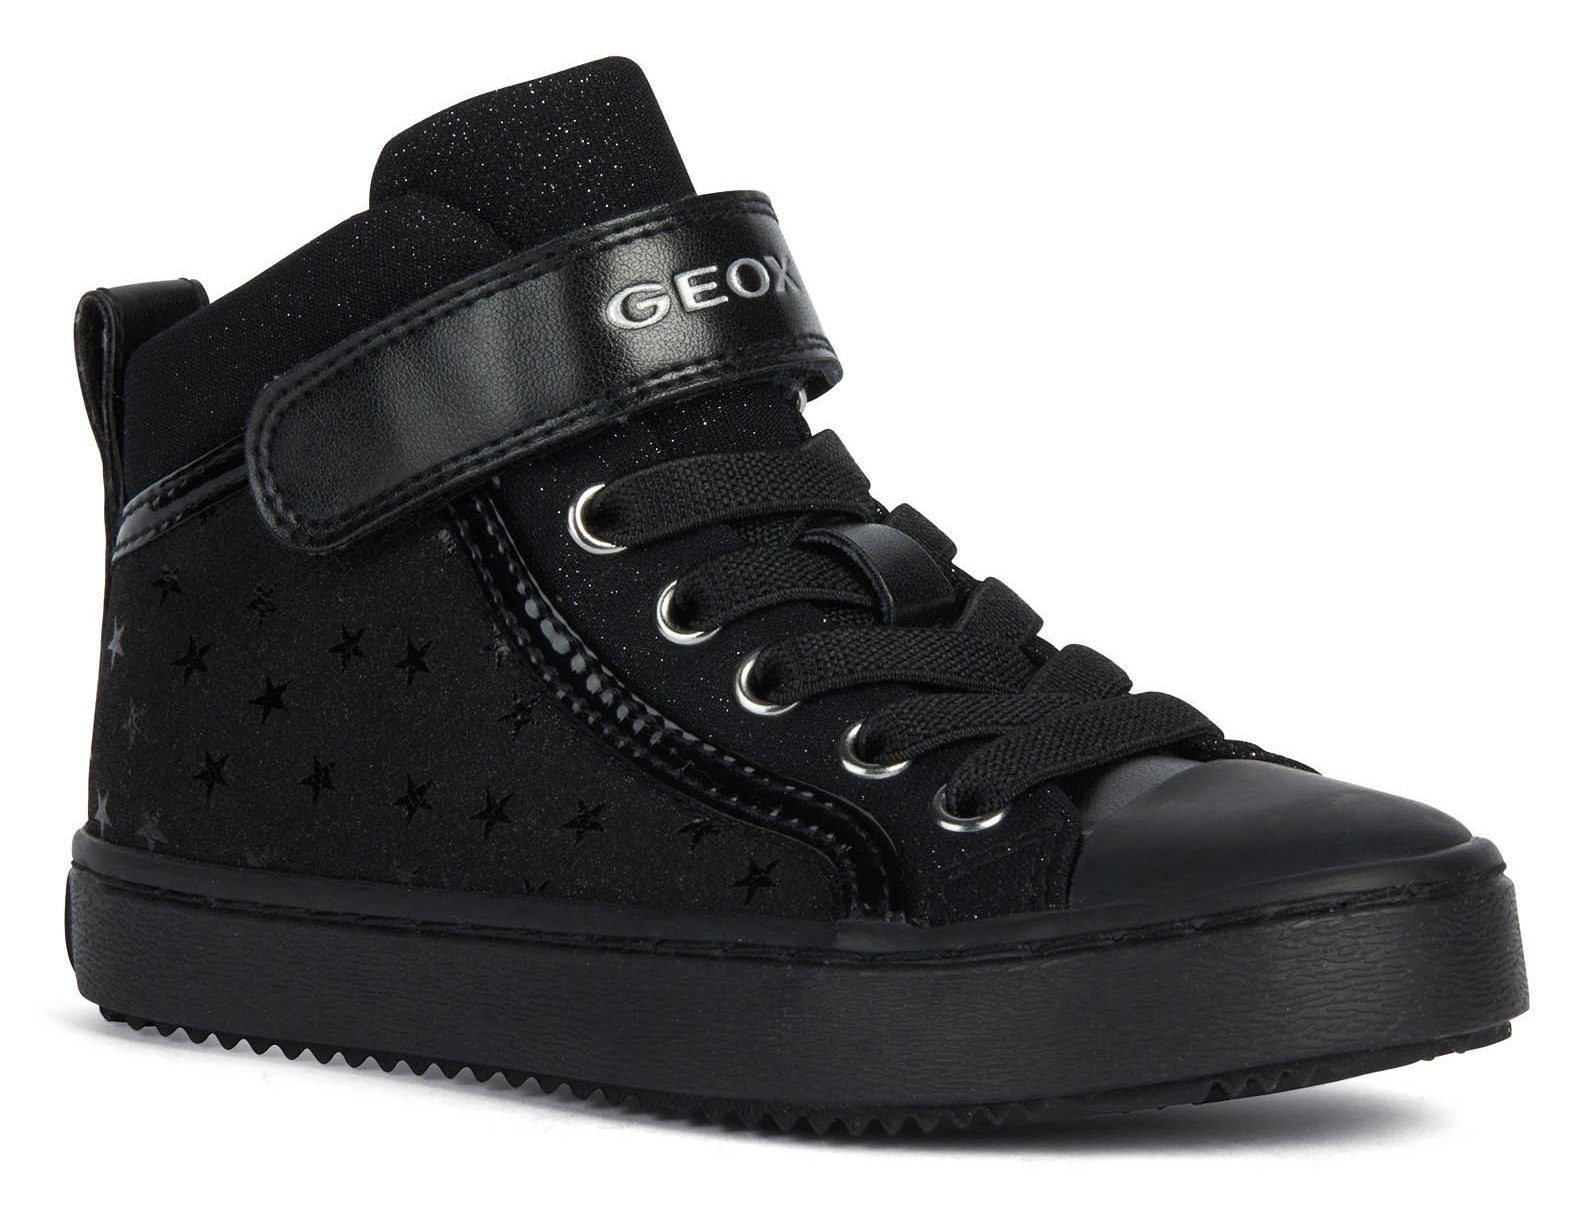 Geox J KALISPERA Sternenmuster GIRL Sneaker schwarz mit stylischem